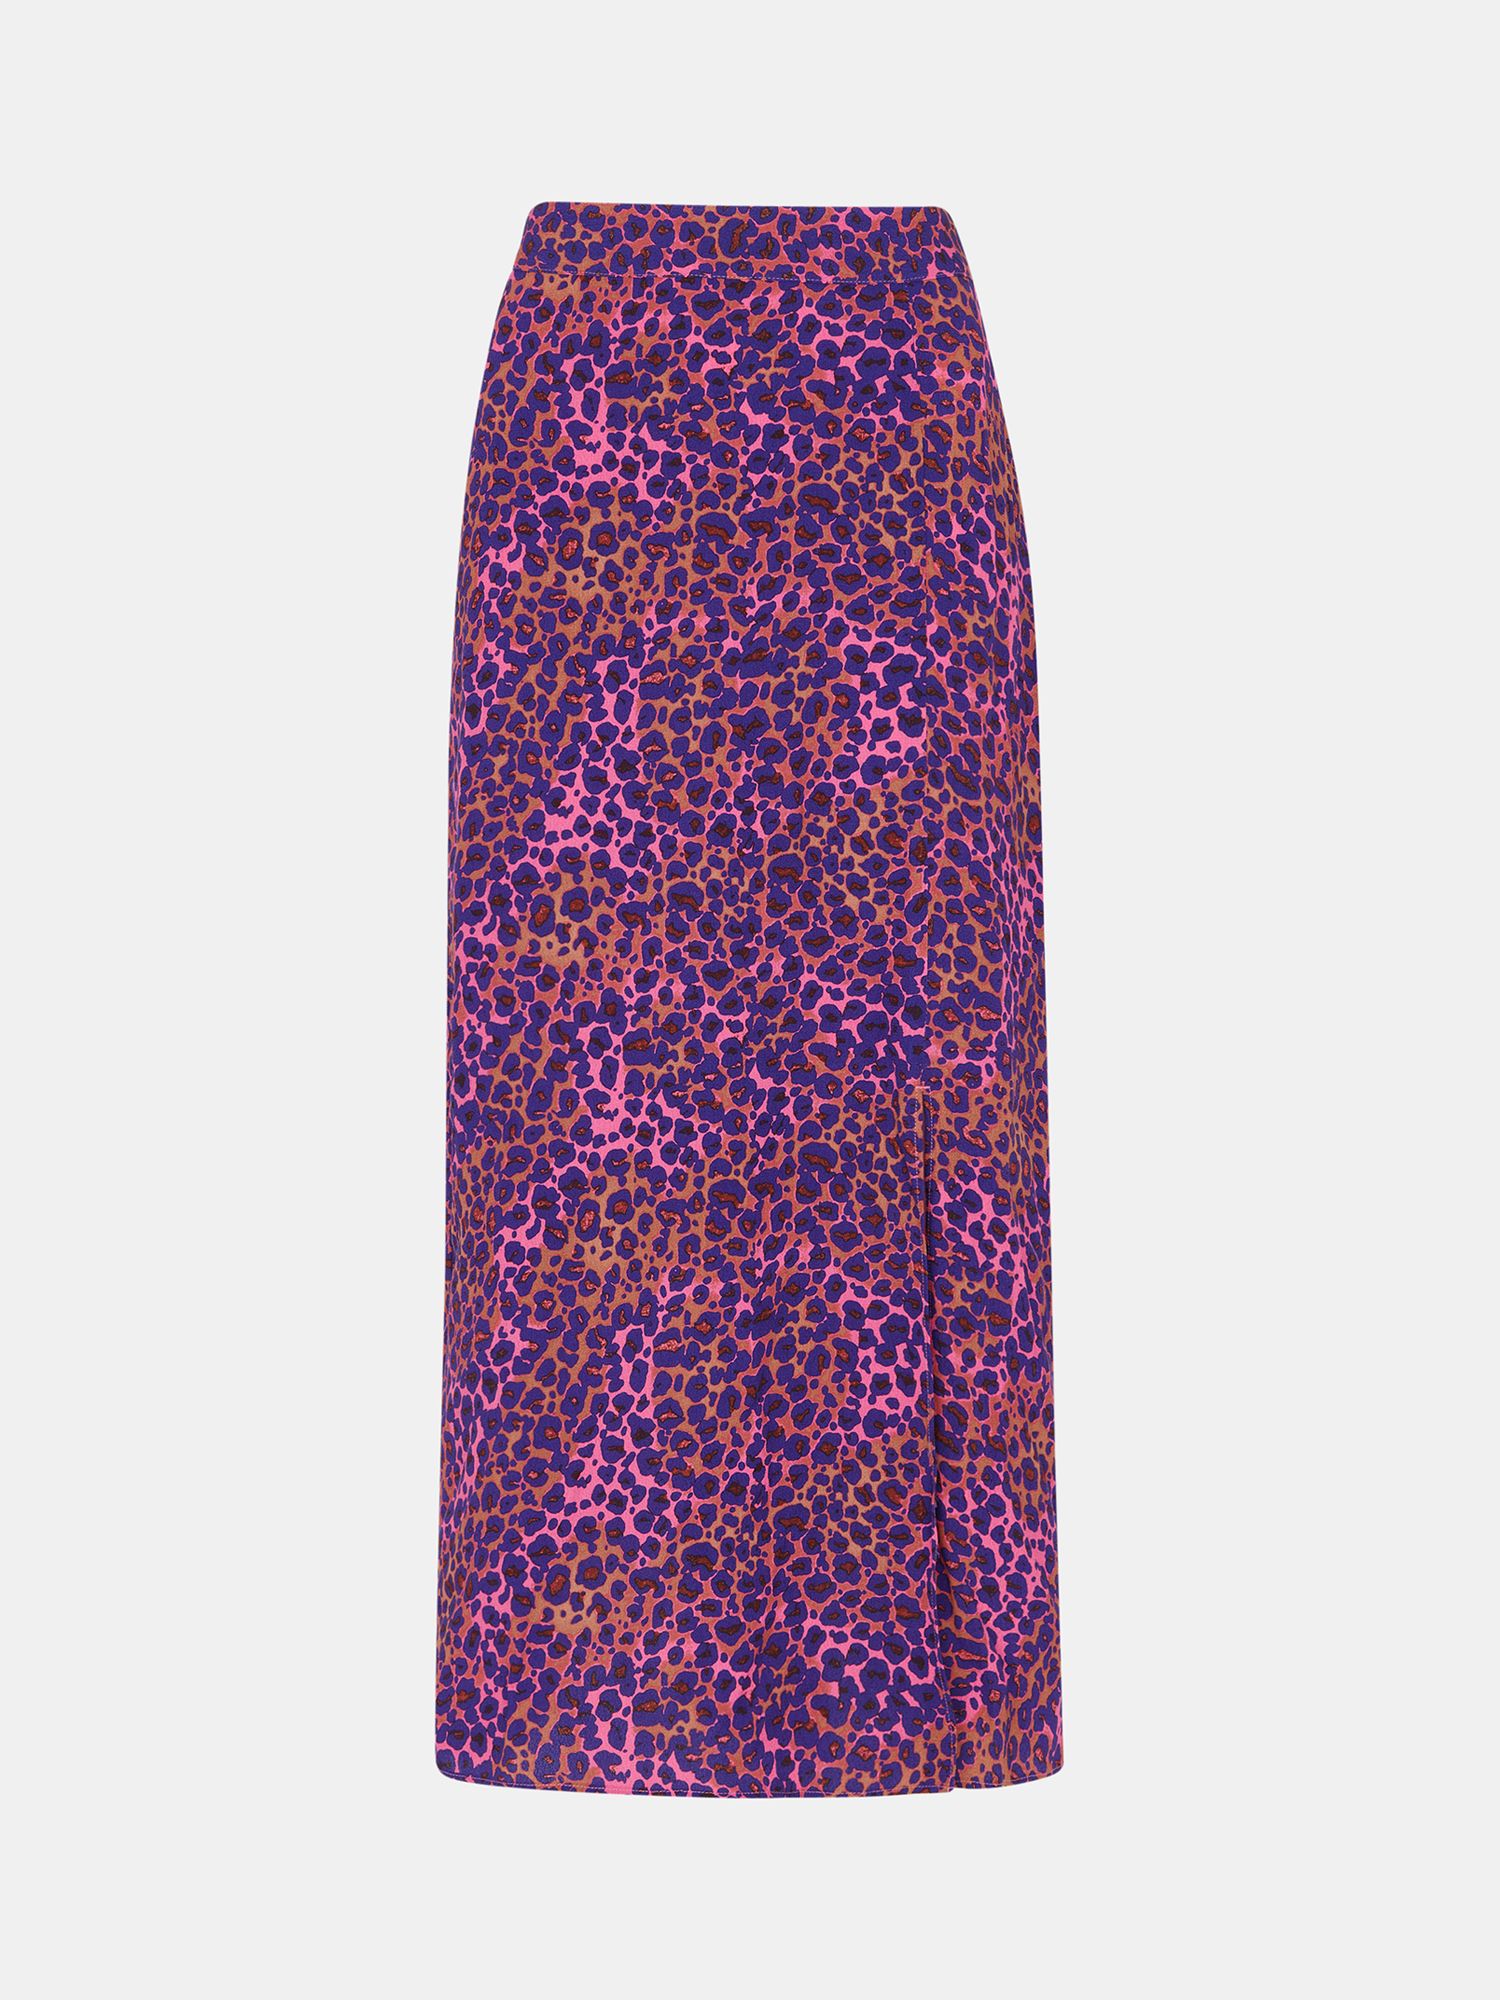 Whistles Mottled Leopard Print Midi Skirt, Pink/Multi, 6